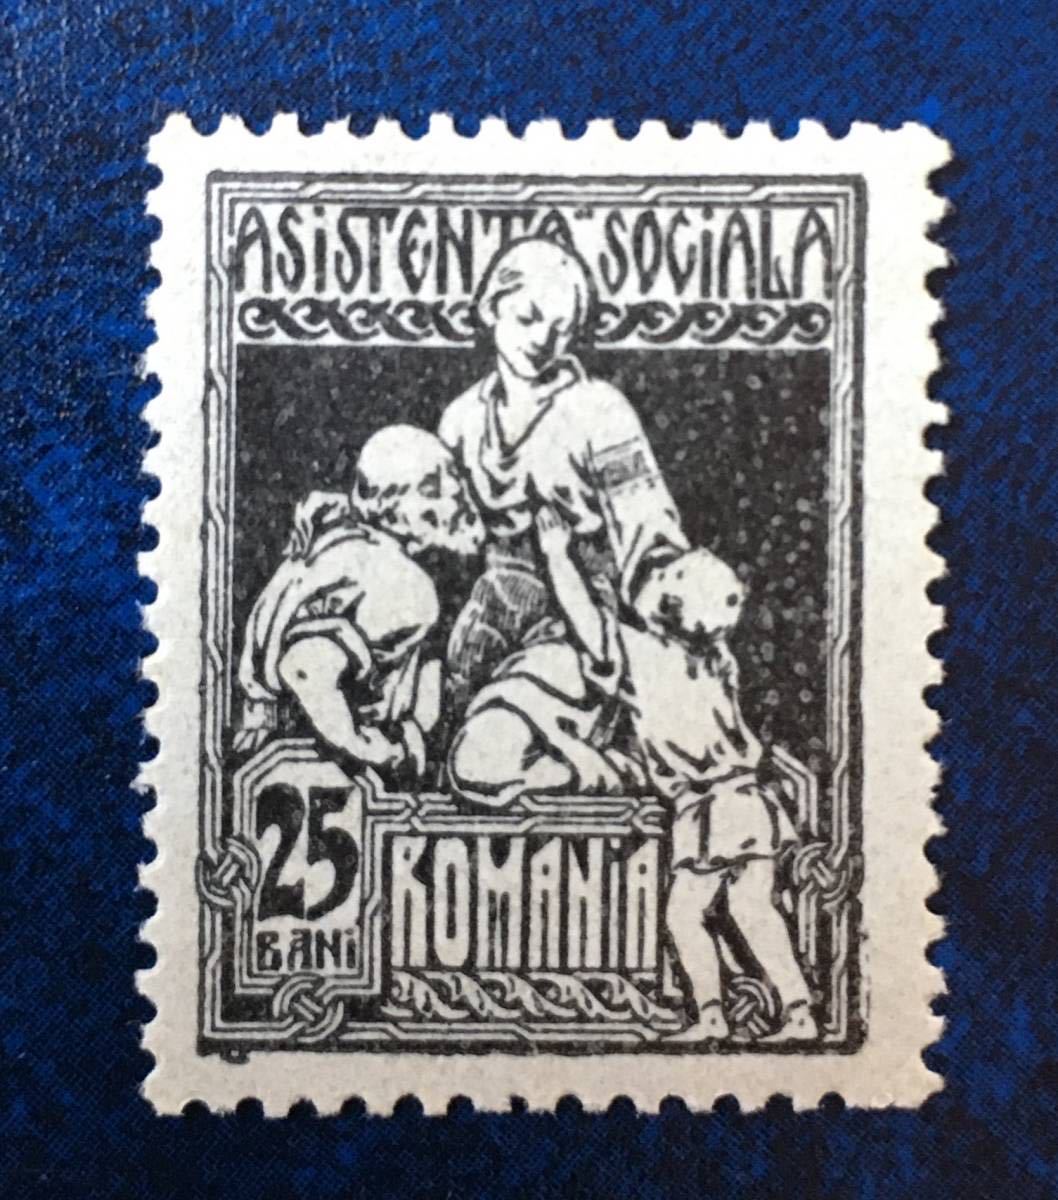 ルーマニア 1921年 慈善活動 黒25bani type1未使用 郵便税切手 1928 年頃の民族衣装を着た看護師と老人と子供 美品_画像1